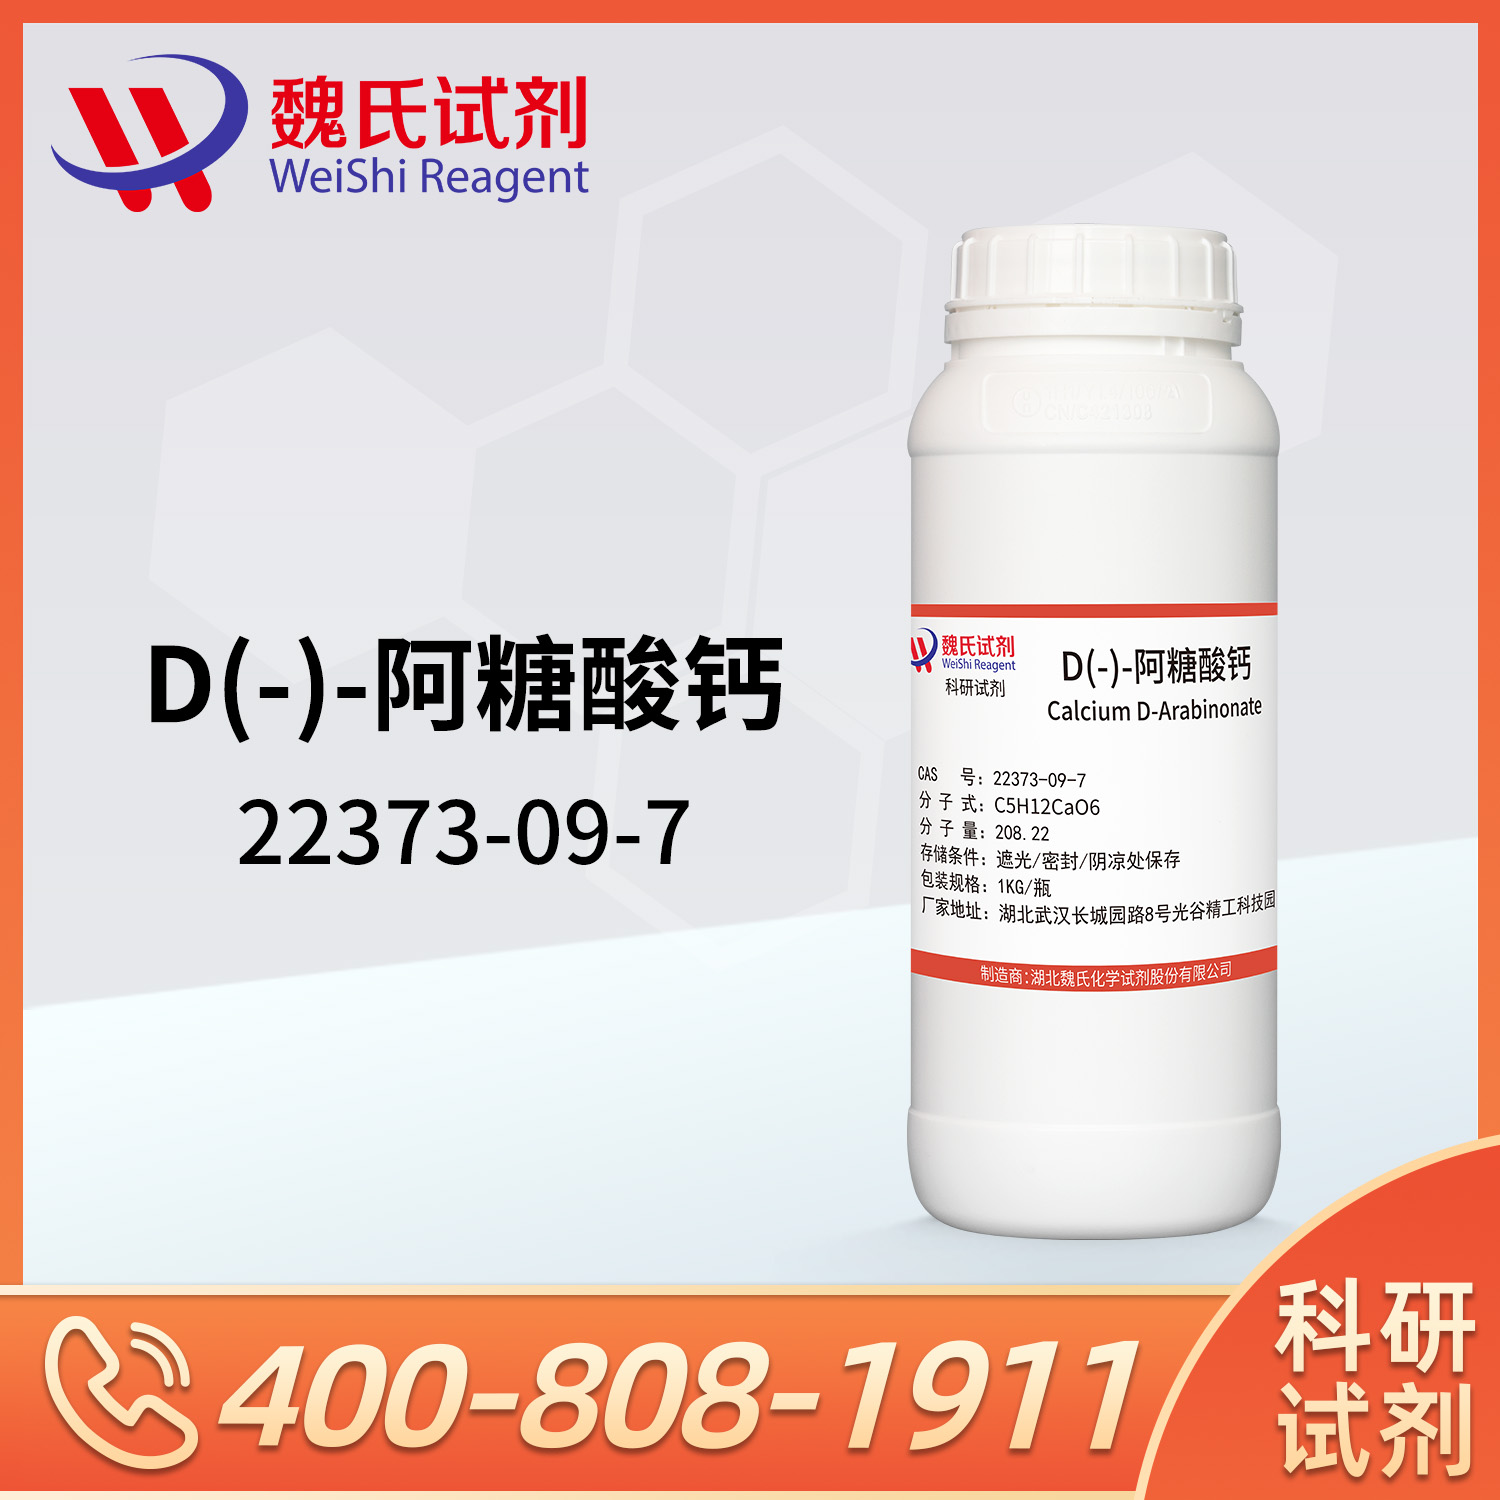 D-阿拉伯糖酸钙；D(-)-阿糖酸钙；D-阿糖酸钙